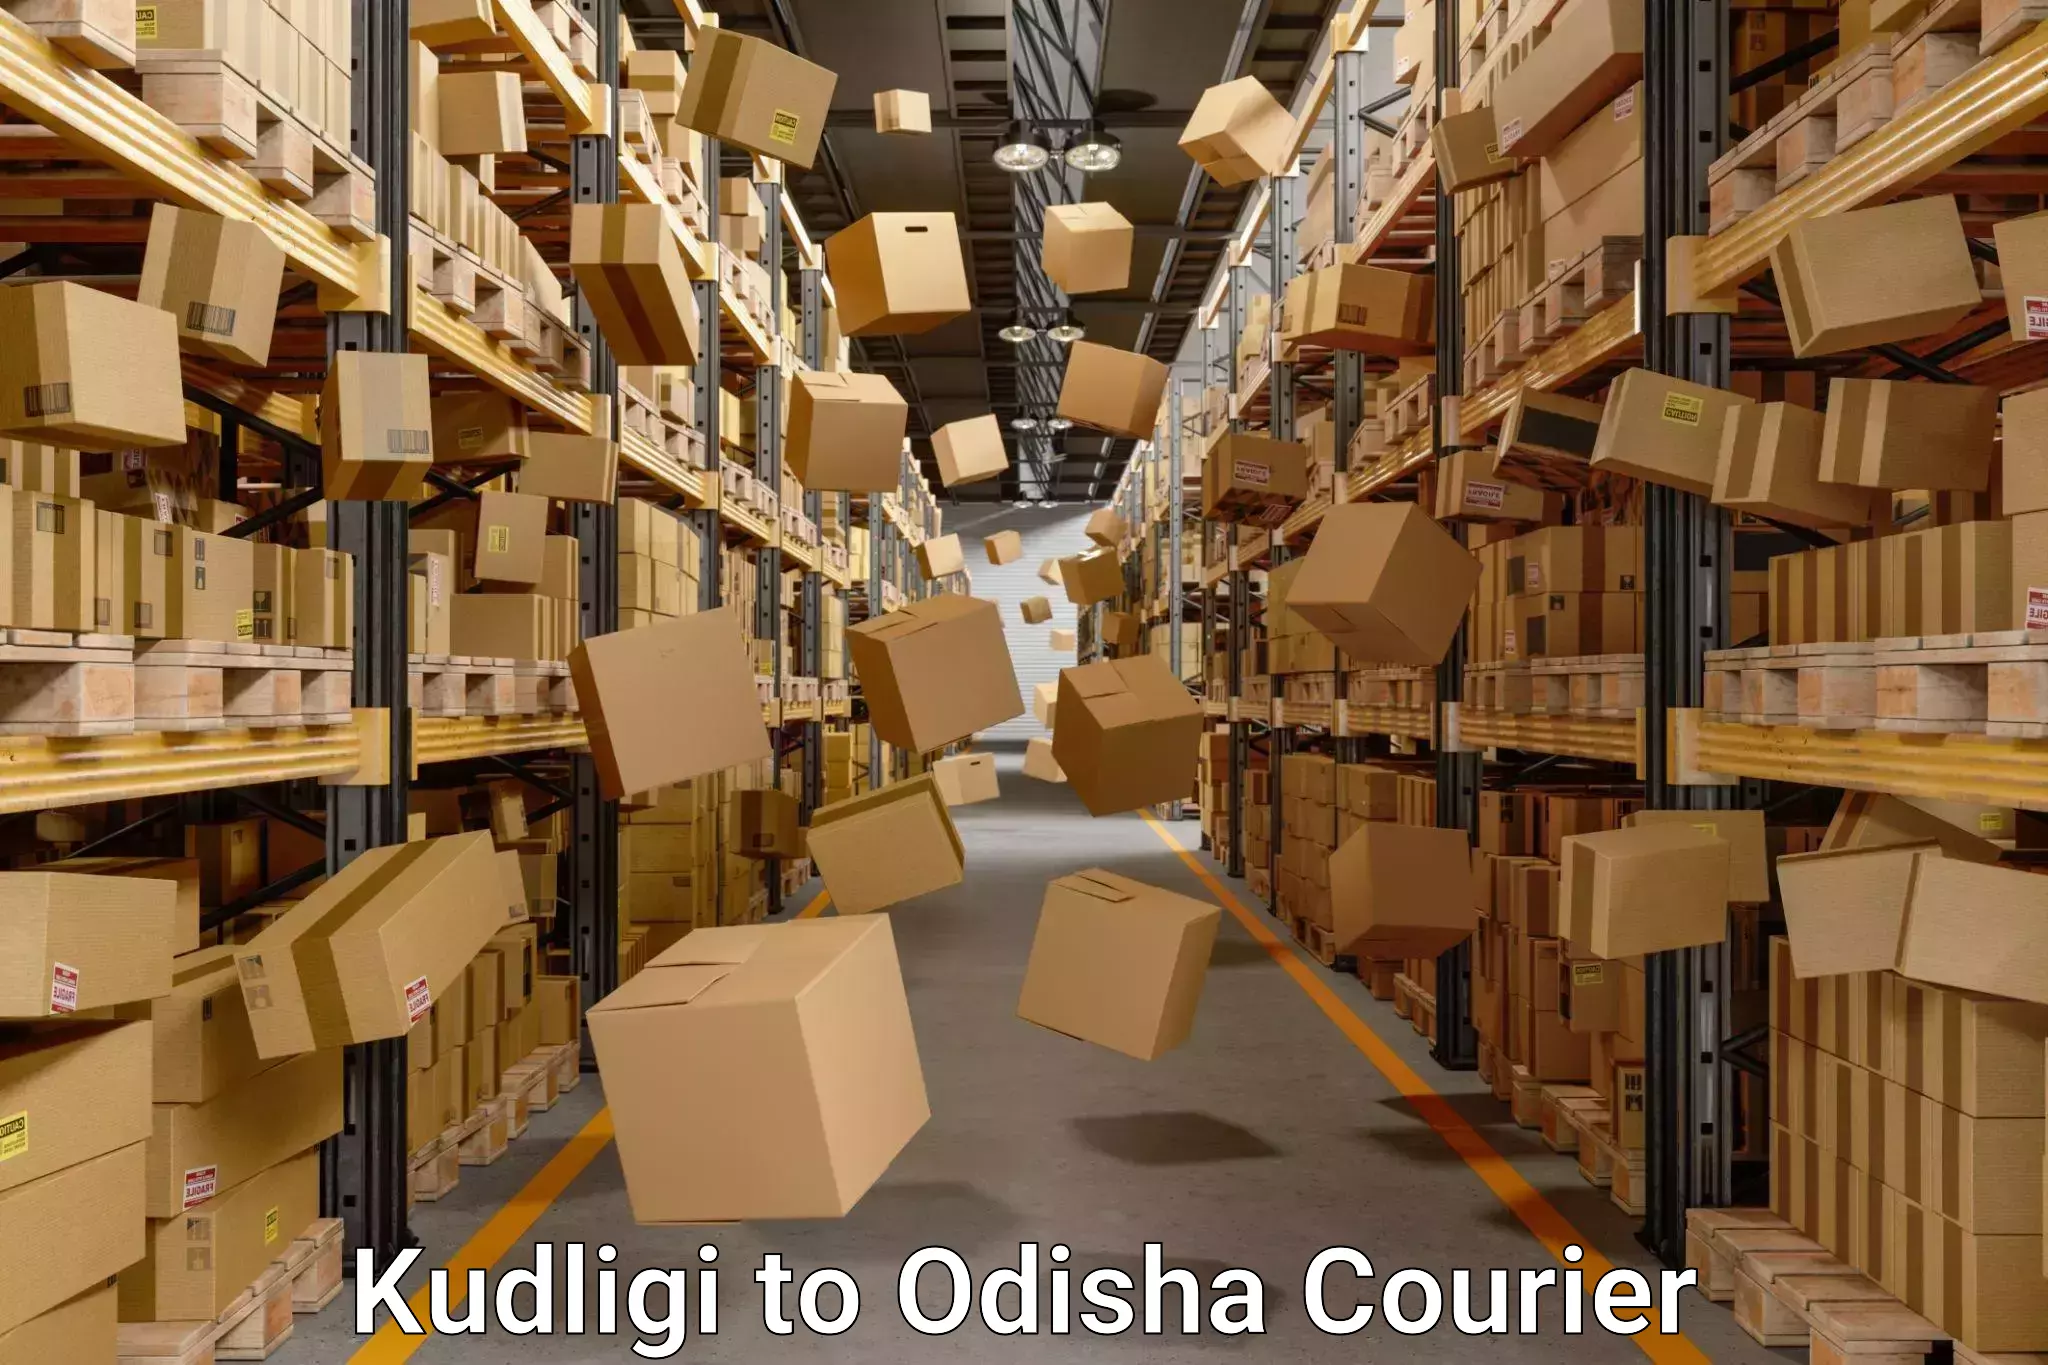 Household moving solutions Kudligi to Odisha